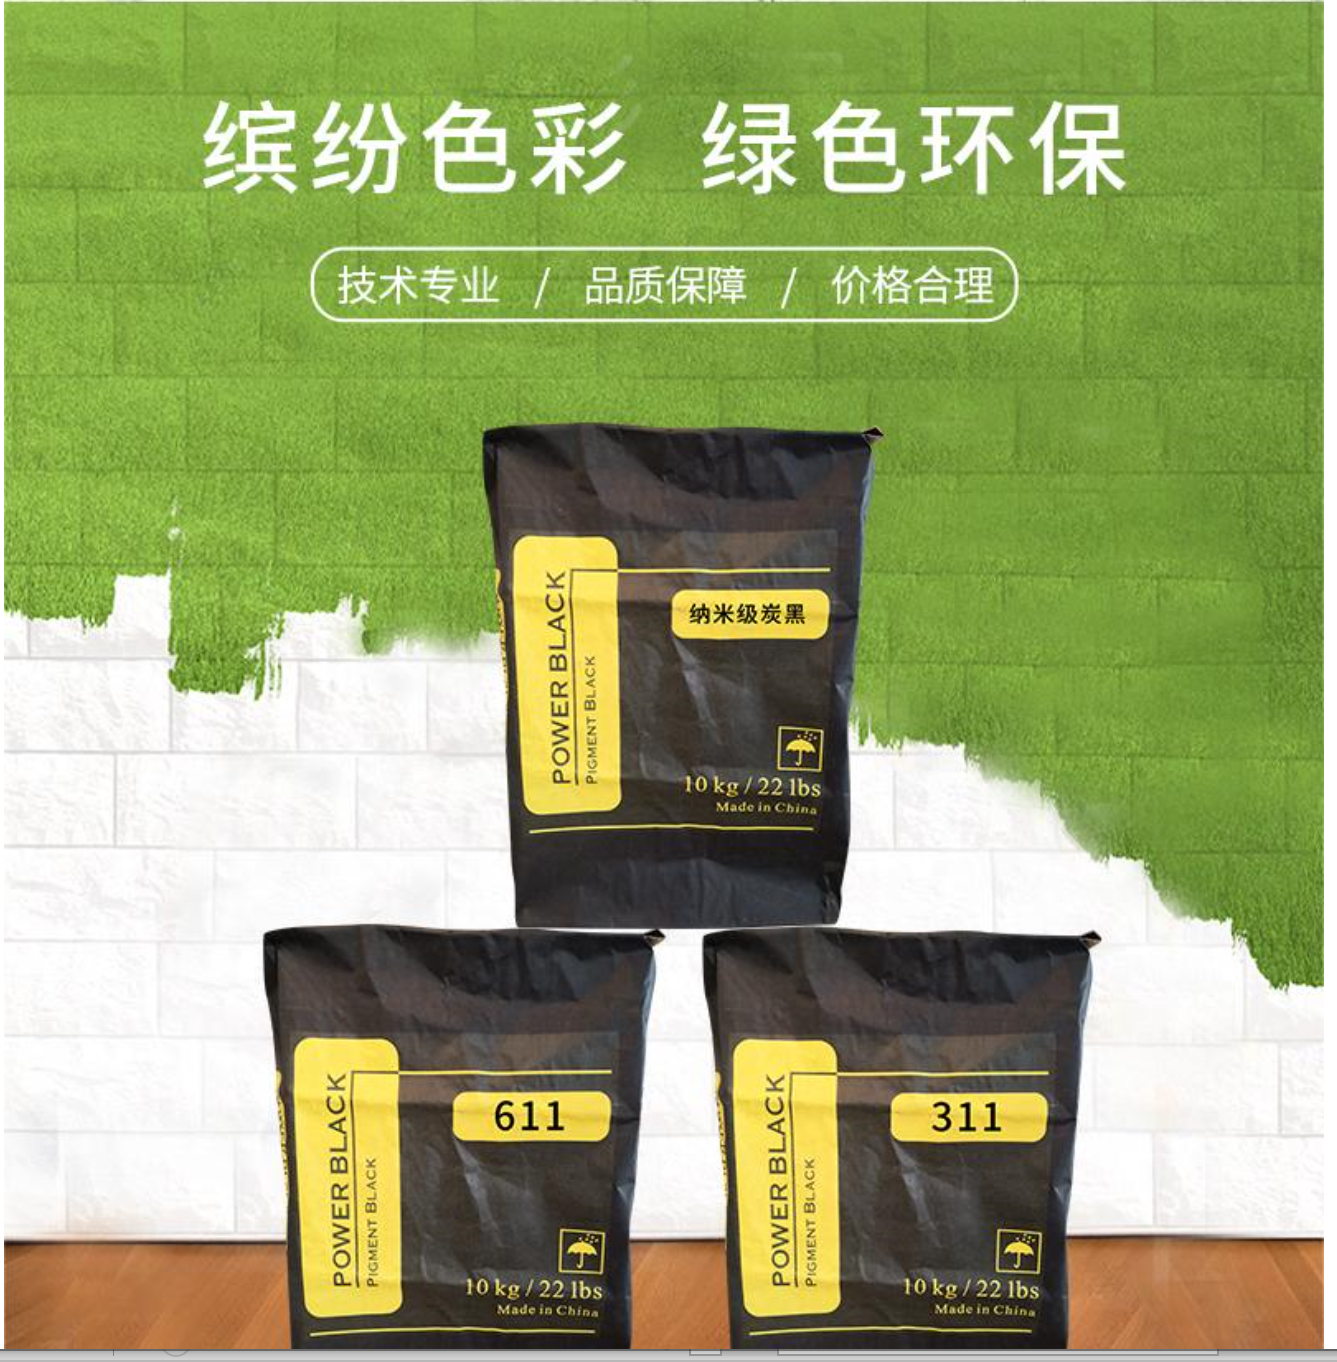 黑龙江高色素炭黑311 超细碳黑价格 色母粒碳黑生产厂家图片